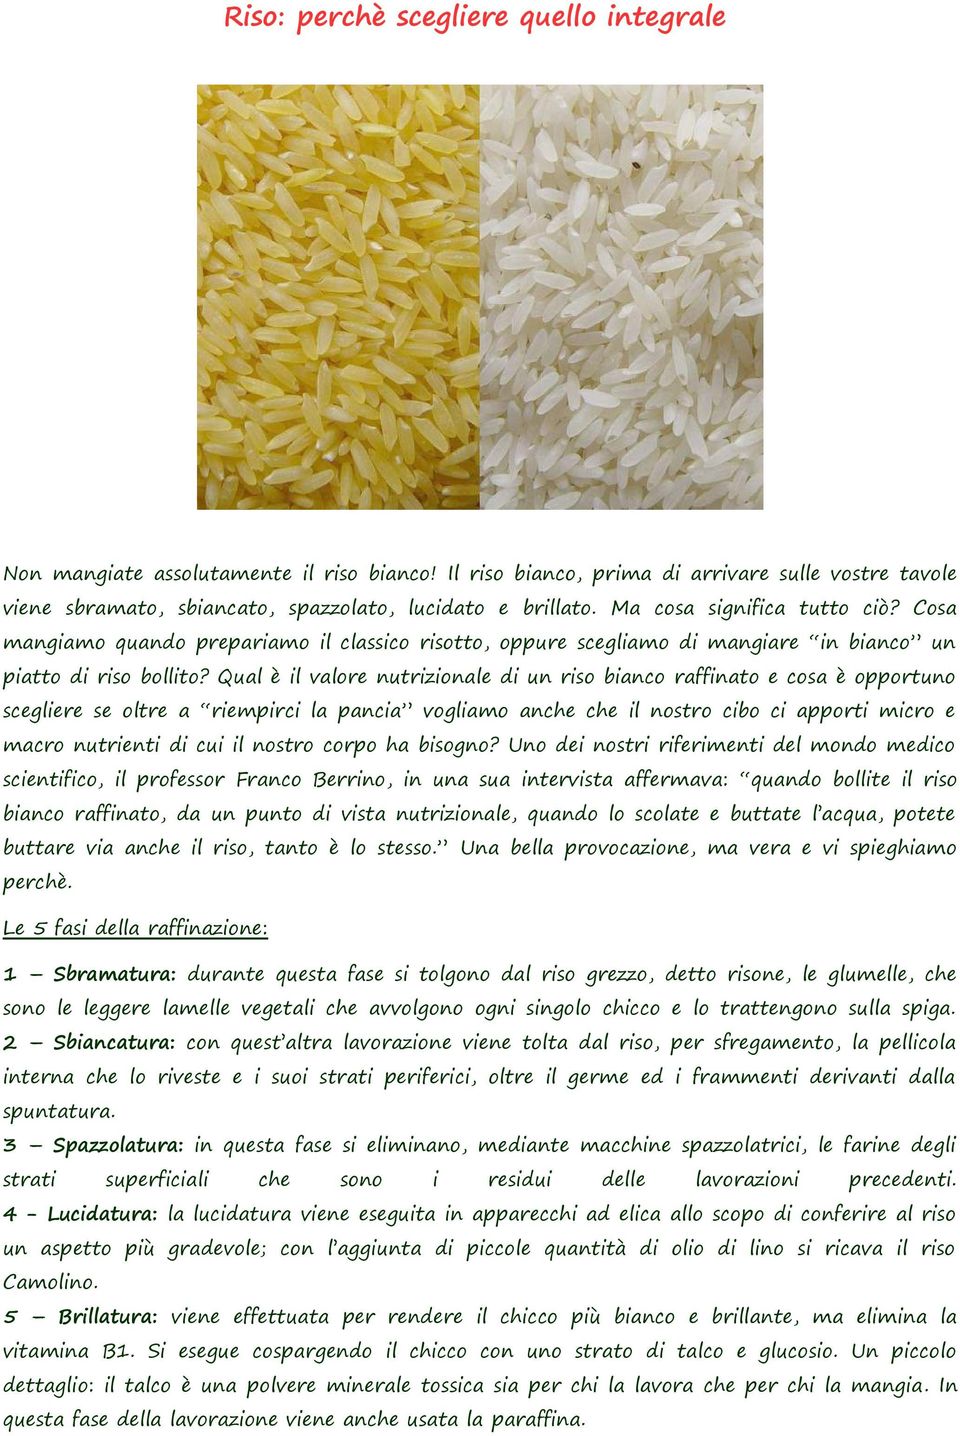 Qual è il valore nutrizionale di un riso bianco raffinato e cosa è opportuno scegliere se oltre a riempirci la pancia vogliamo anche che il nostro cibo ci apporti micro e macro nutrienti di cui il